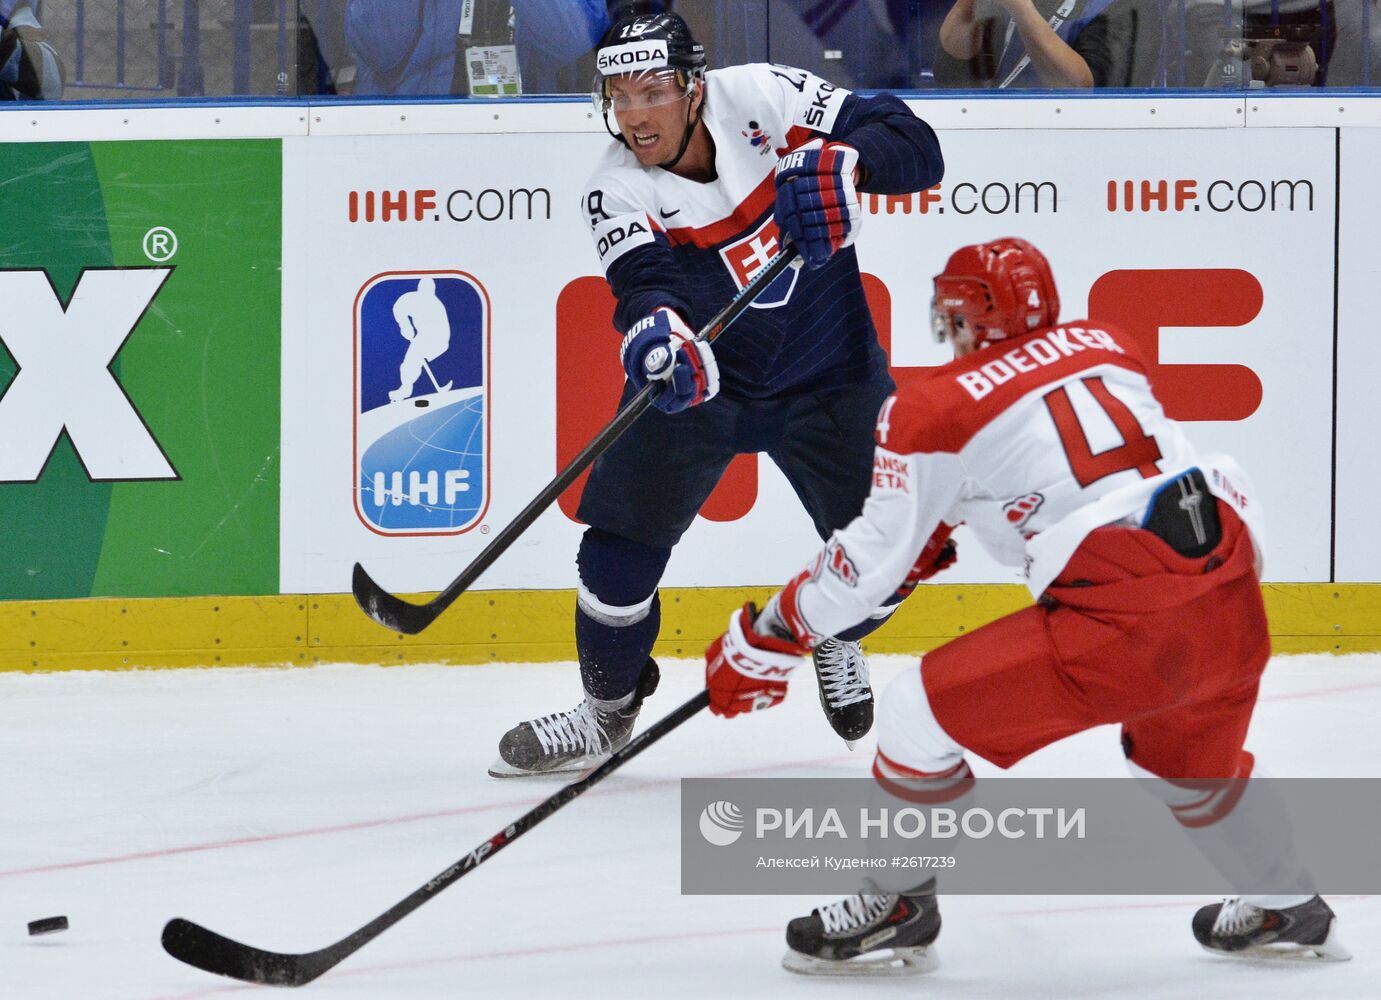 Хоккей. Чемпионат мира - 2015. Матч Словакия - Дания